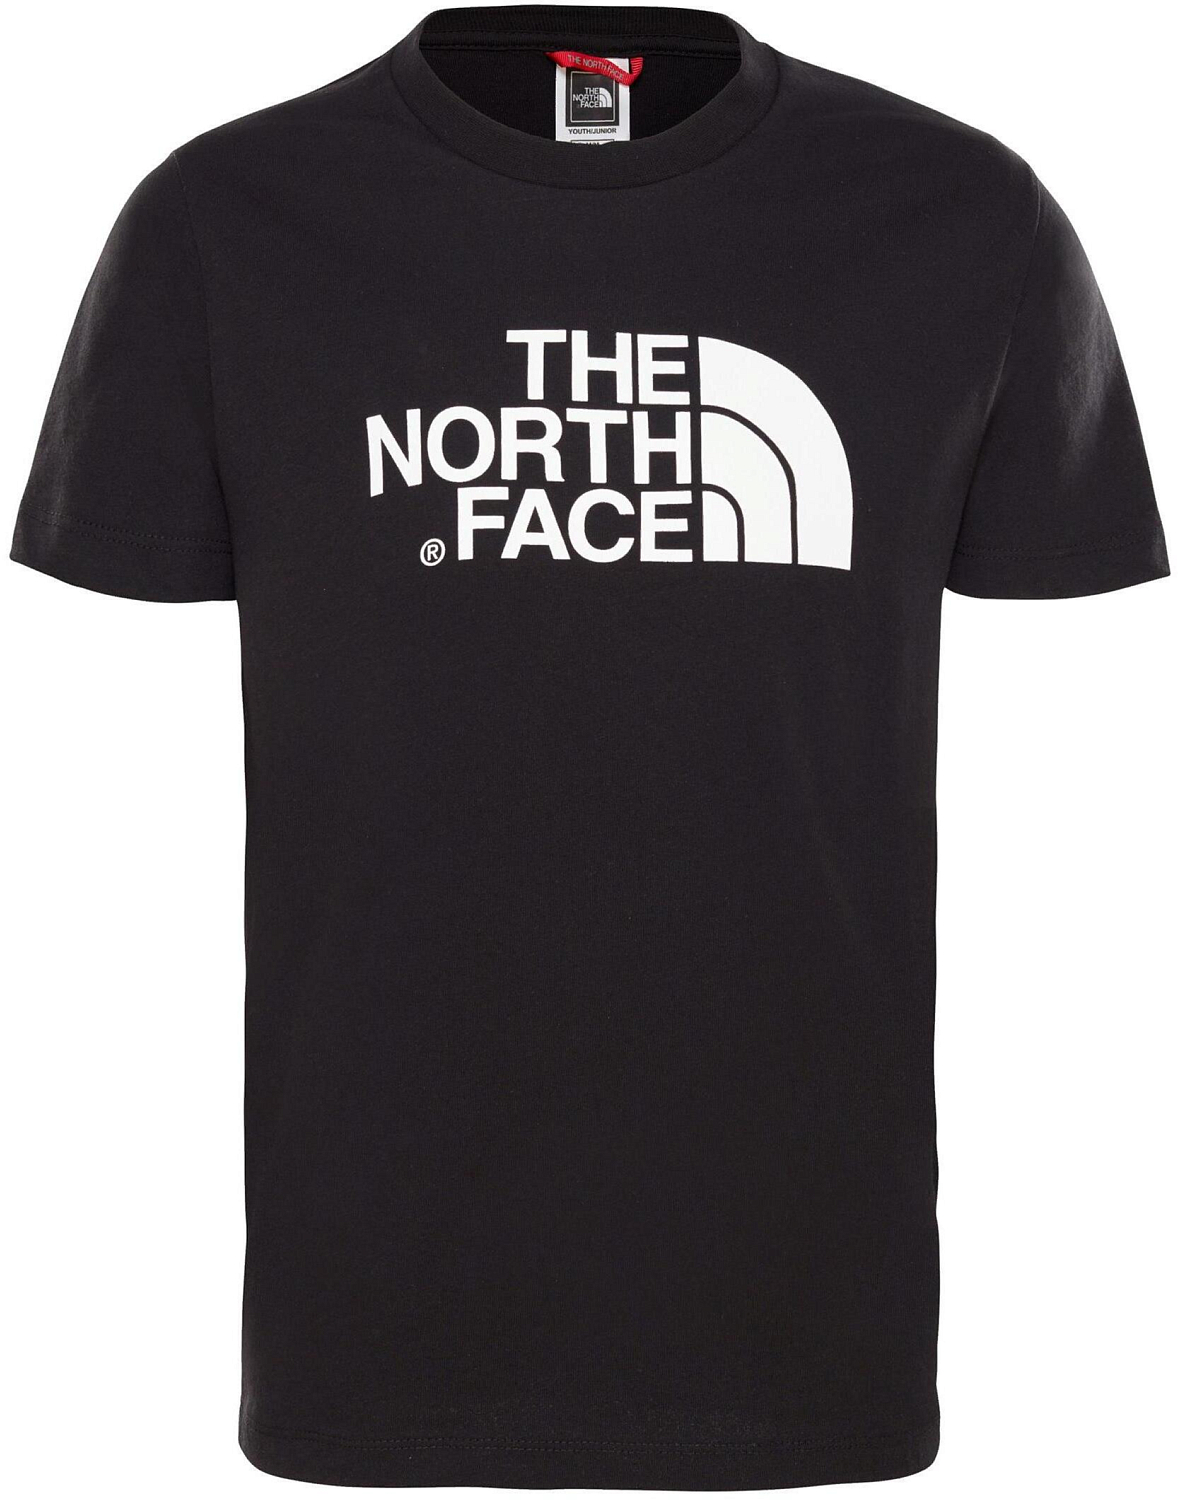 Футболка для активного отдыха The North Face 2019 Y S/S Easy Tee TNF Black/TNF White